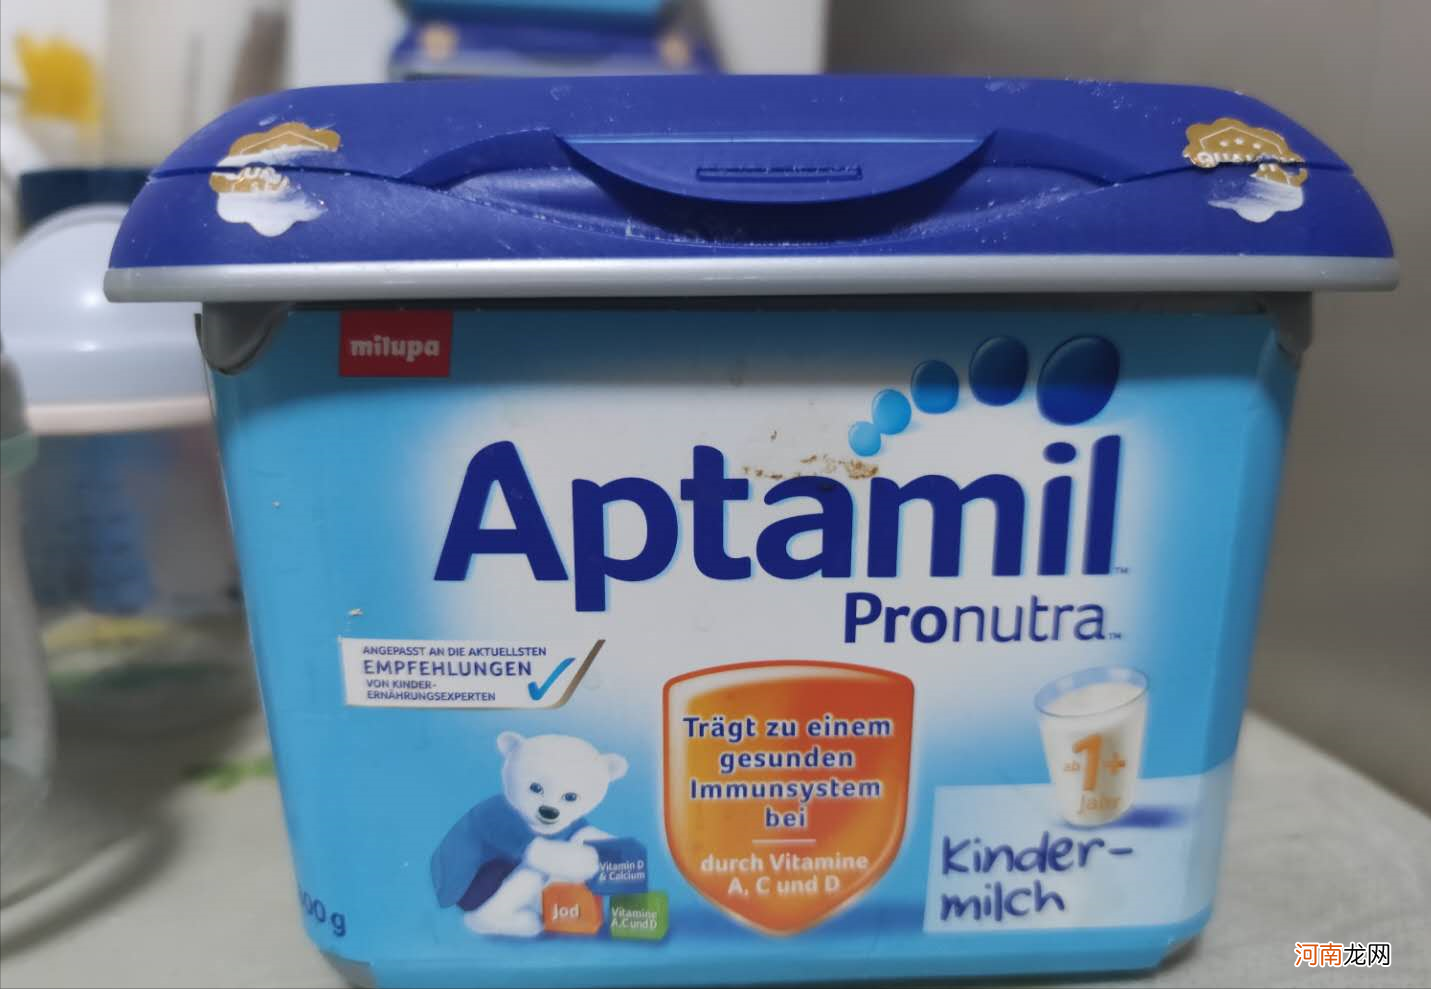 下个月就要生孩子了，有好一点的适合新生儿喝的奶粉推荐吗？